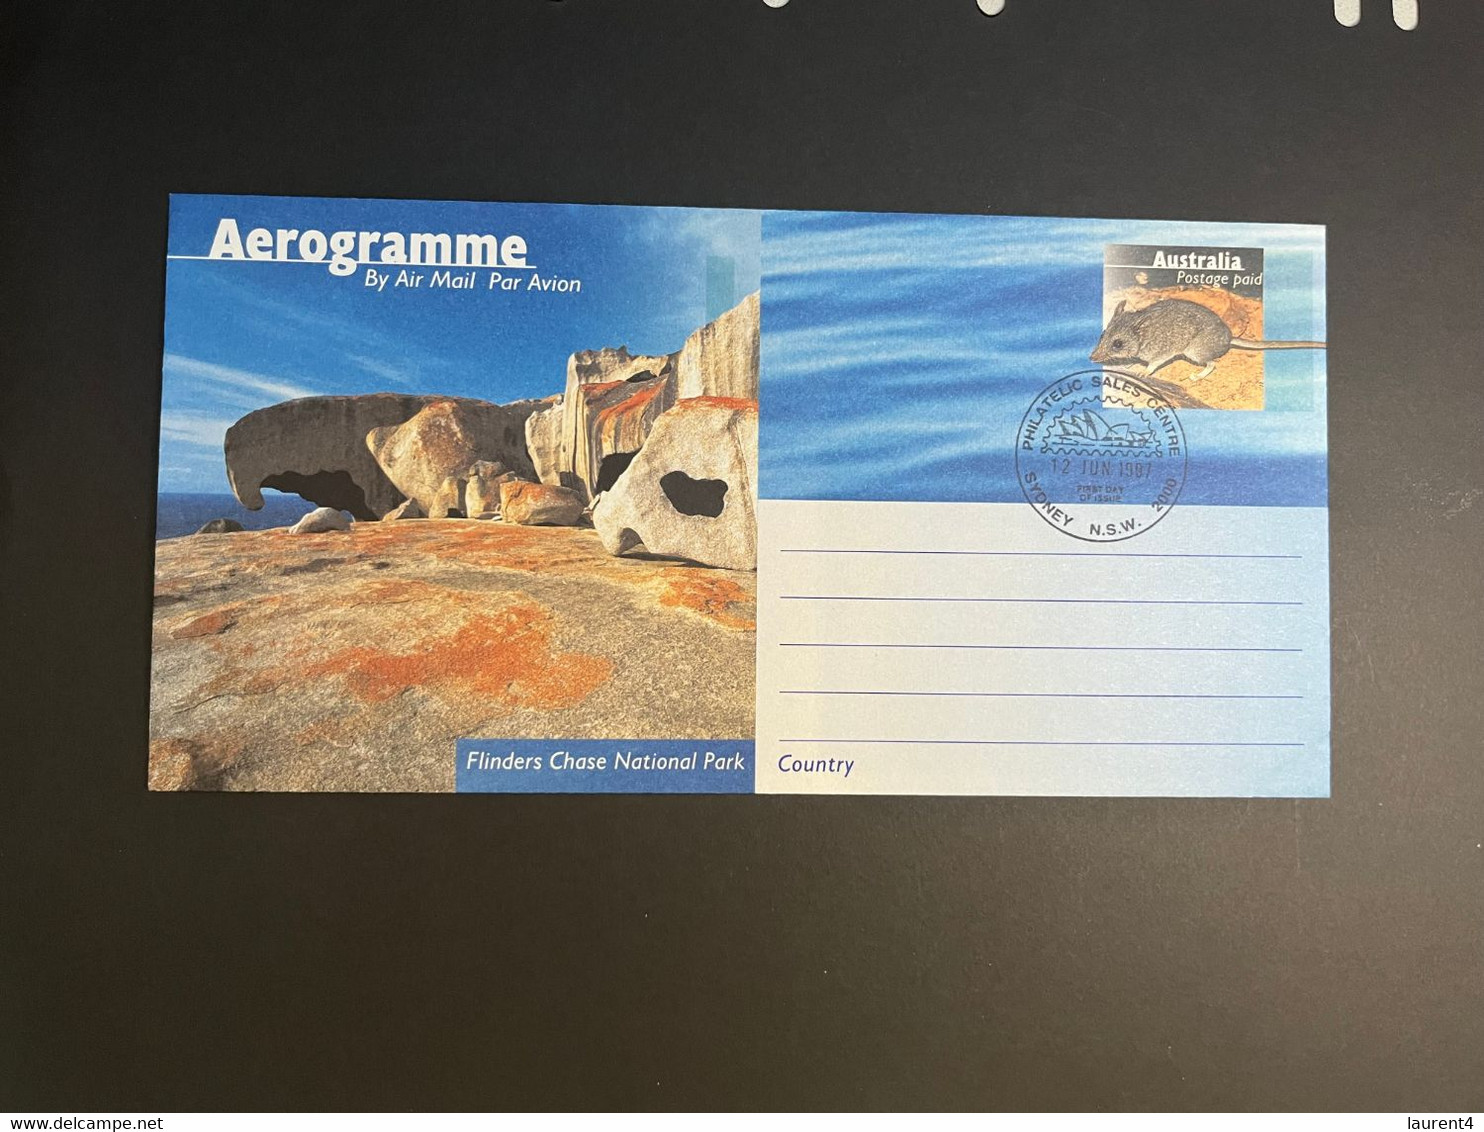 (3 N 45 A) Australia Aerogramme - Australian - National Park (1997 X 5 Aerogramme) - Aérogrammes